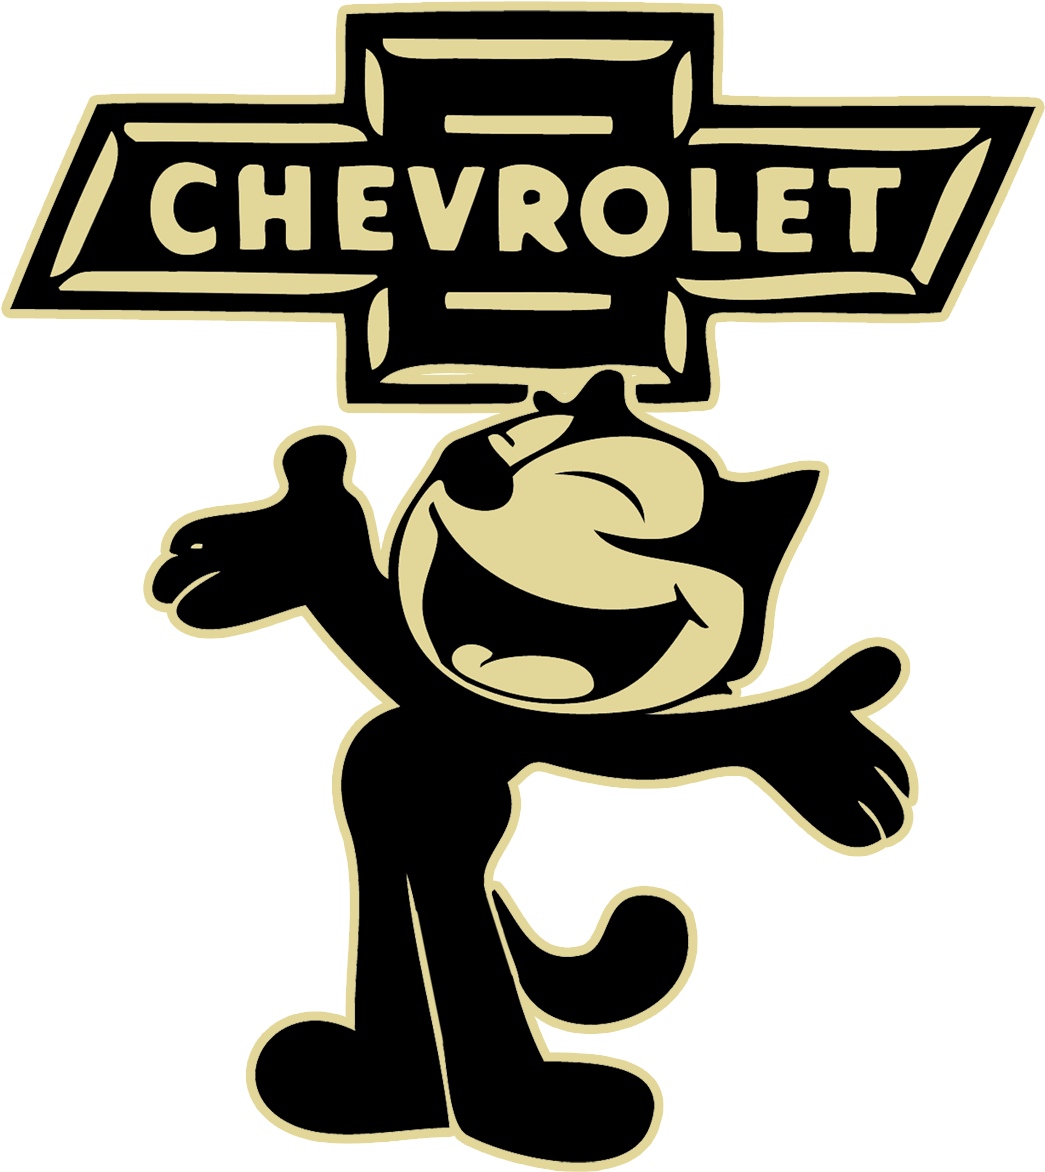 Felix Chevrolet Mascot Logo PNG image